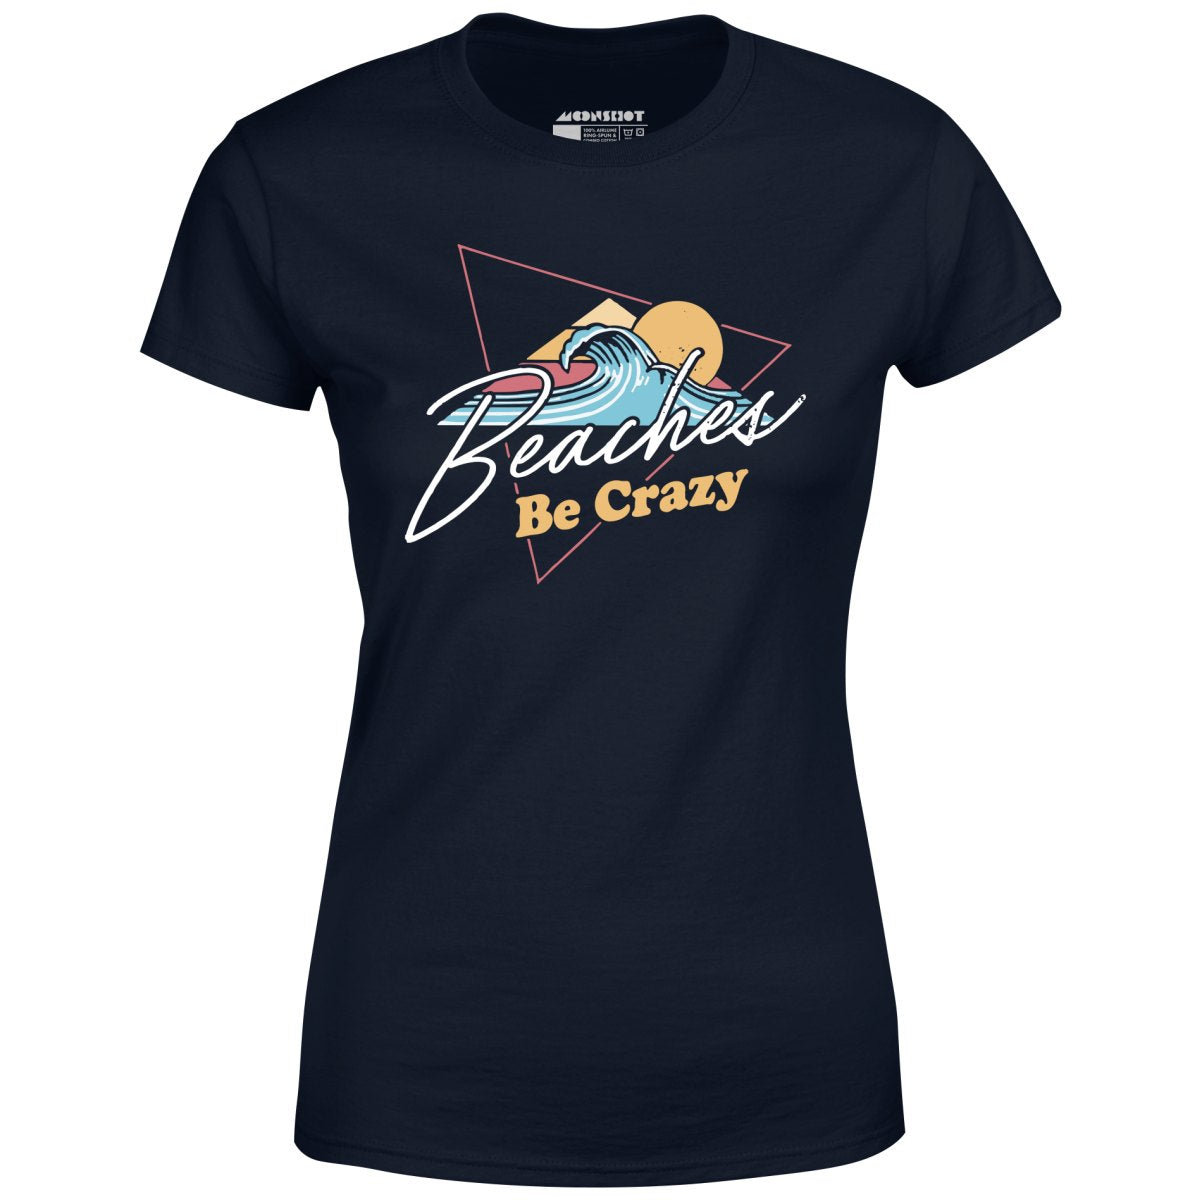 Beaches Be Crazy - Women's T-Shirt